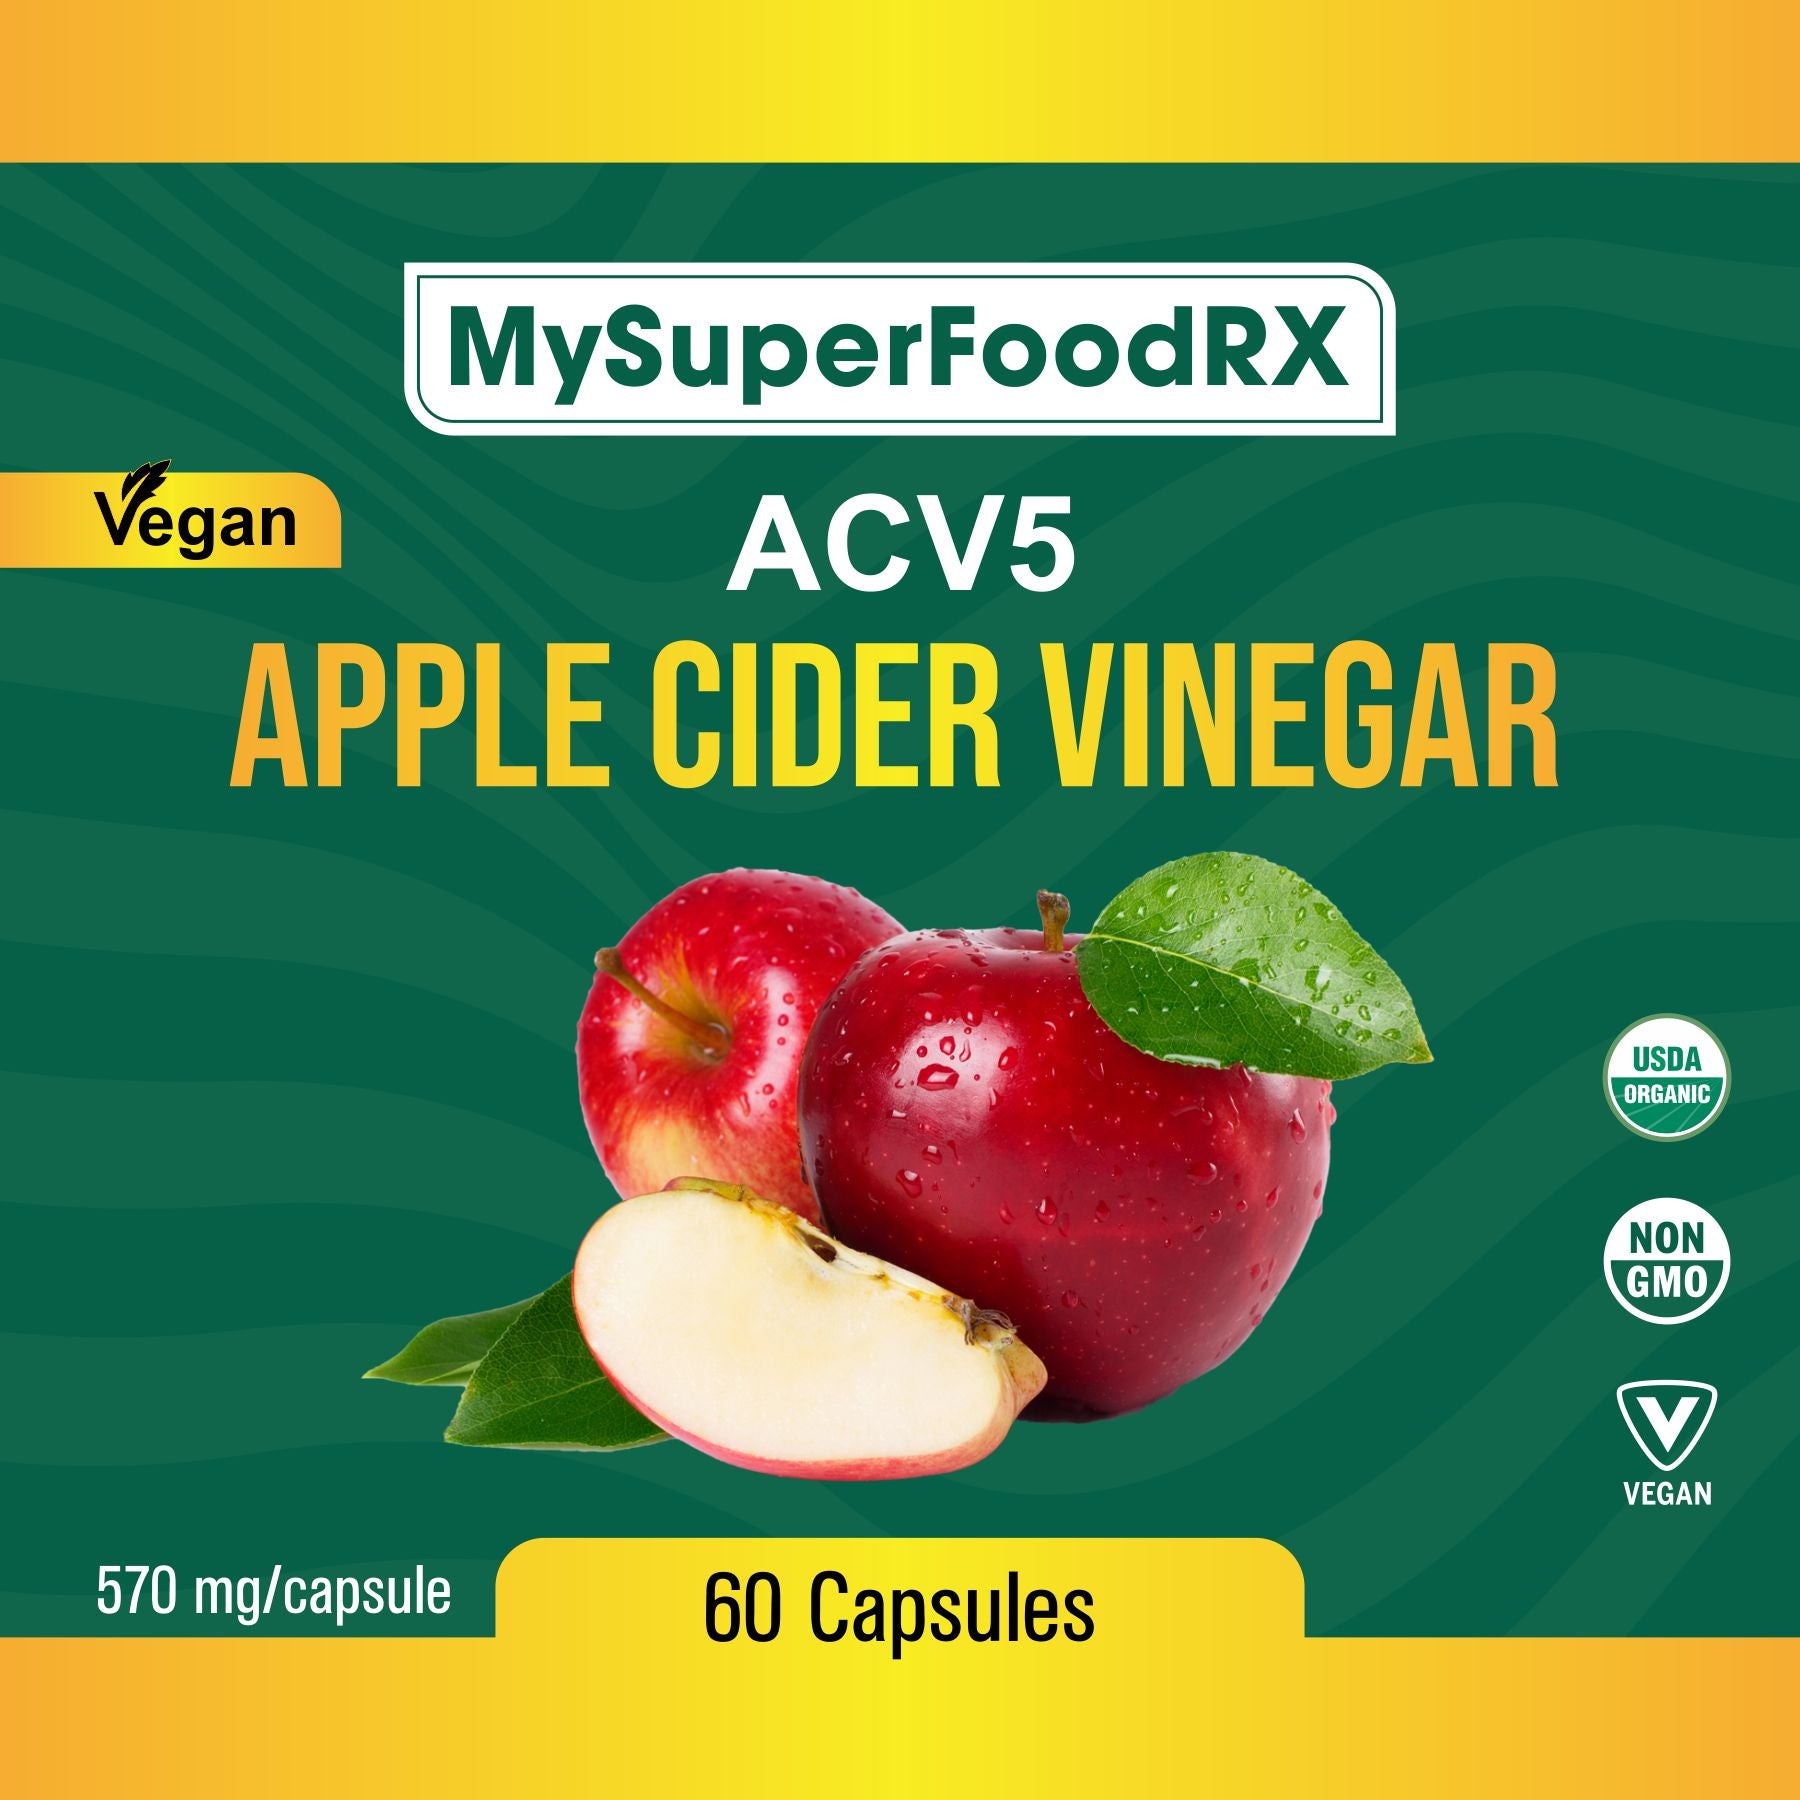 a bottle of mysuperfood rx apple cider vinegar